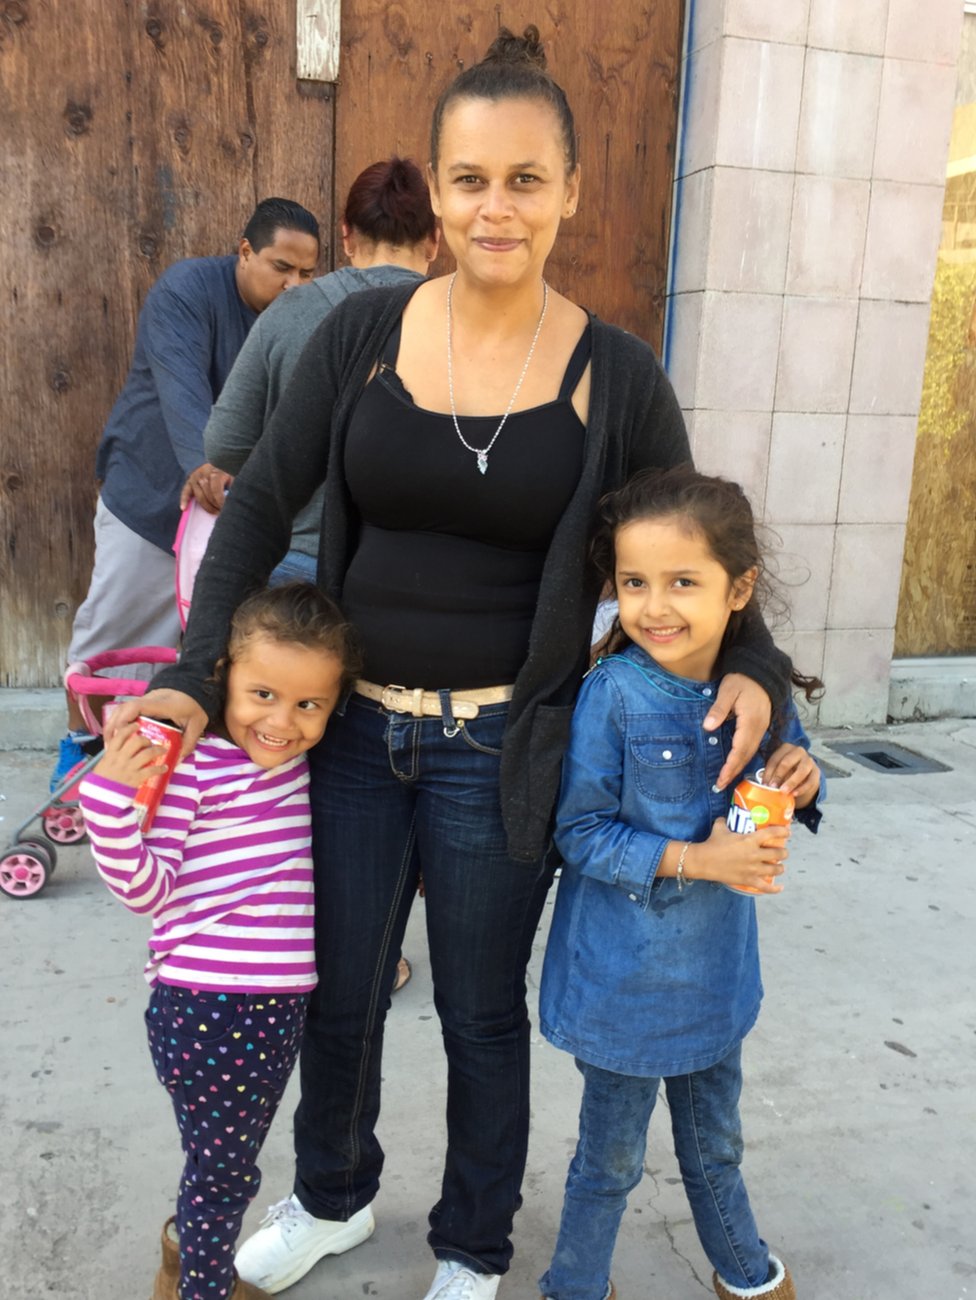 Женщина и двое детей позируют для фото возле границы США и Мексики, 29 апреля 2018 г.